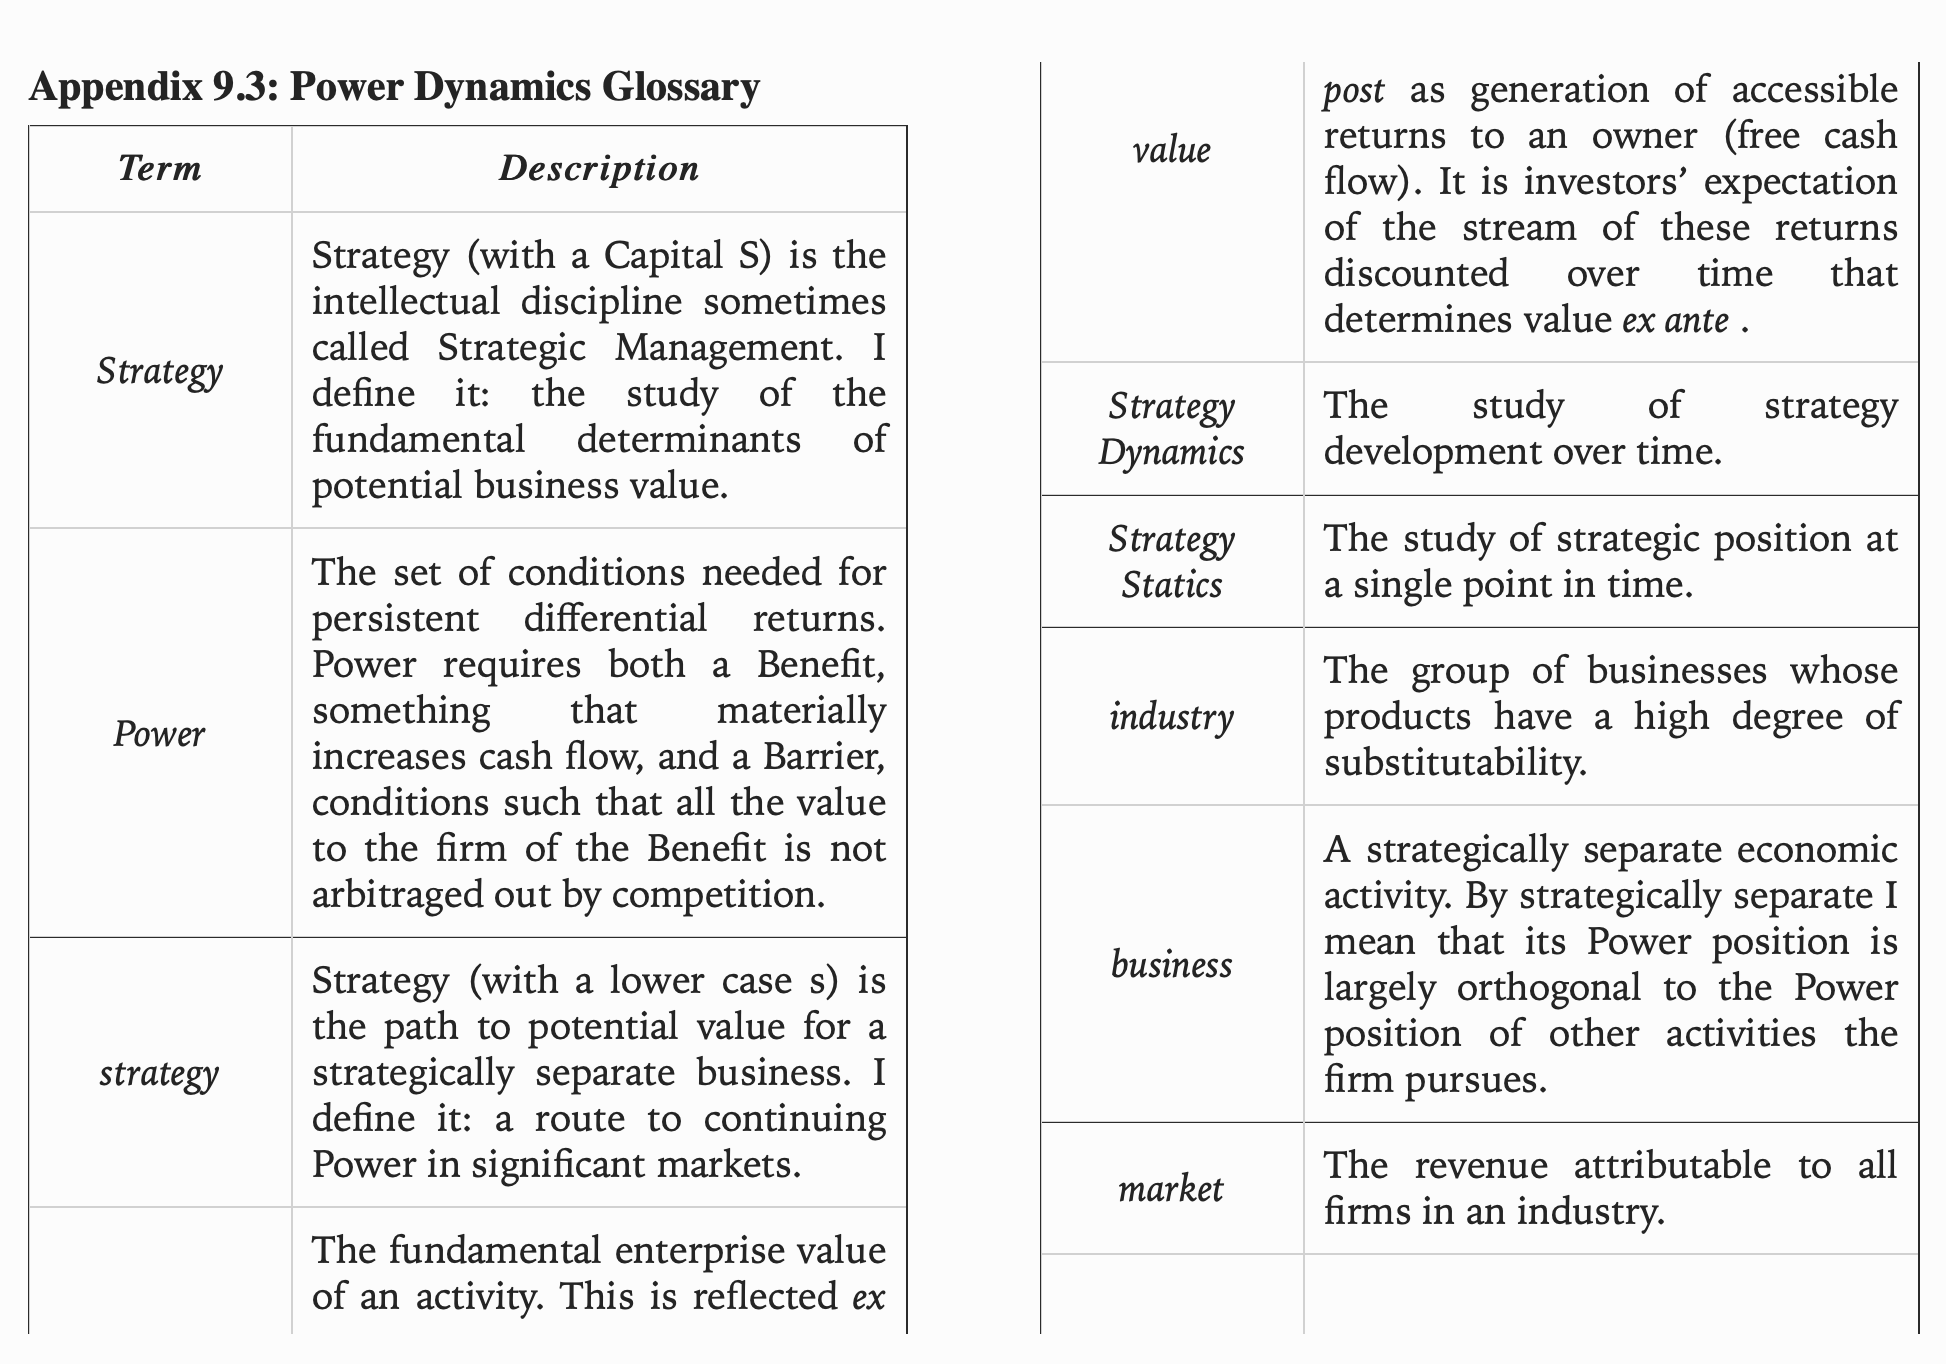 Power Dynamics Glossary 2